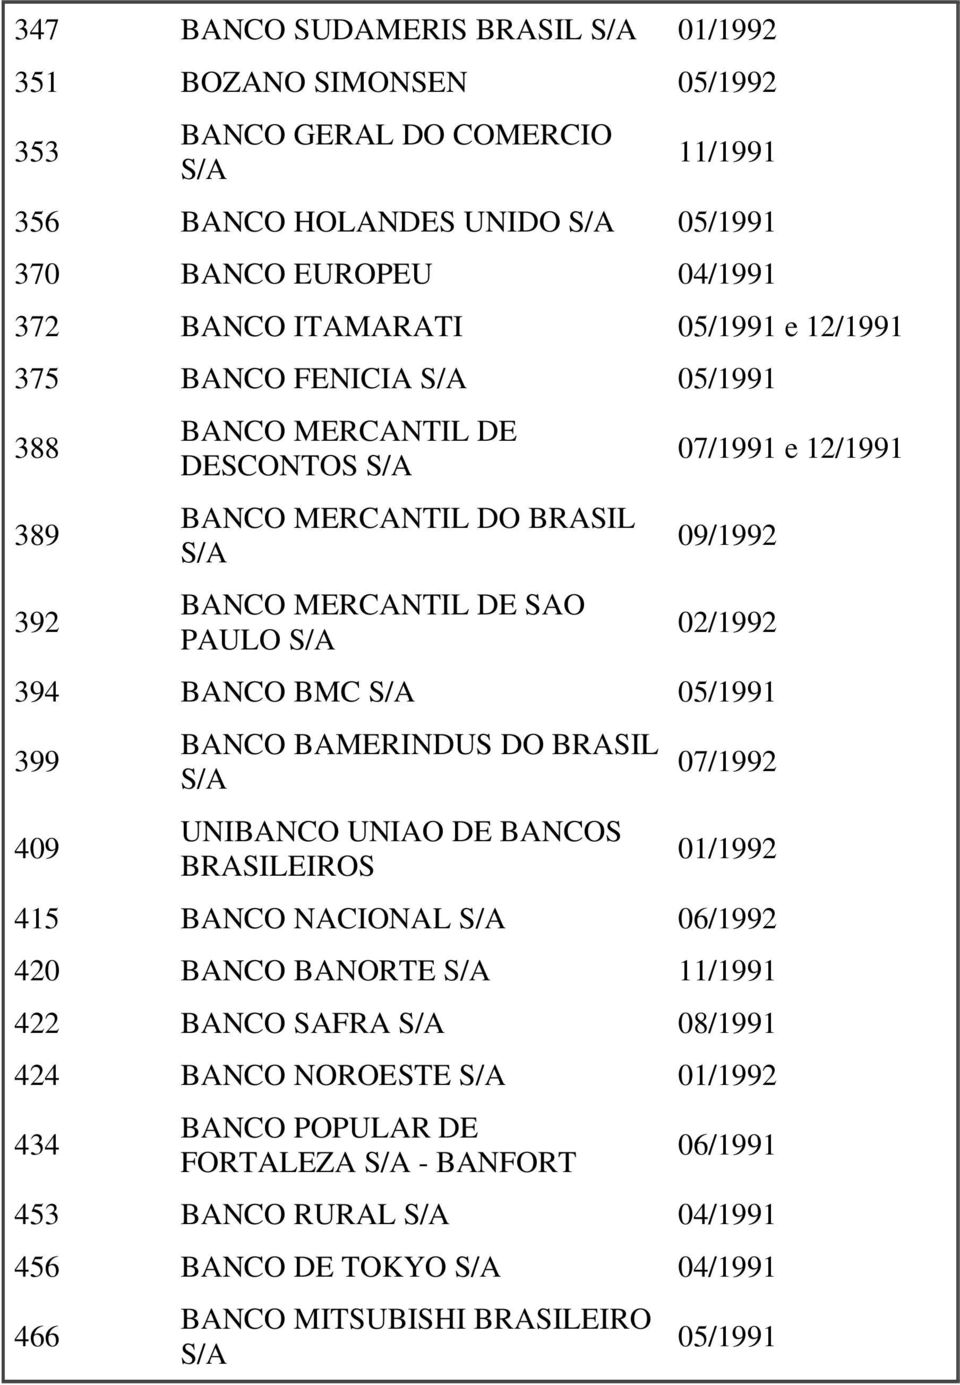 02/1992 394 BANCO BMC 05/1991 399 409 BANCO BAMERINDUS DO BRASIL UNIBANCO UNIAO DE BANCOS BRASILEIROS 07/1992 01/1992 415 BANCO NACIONAL 06/1992 420 BANCO BANORTE 11/1991 422